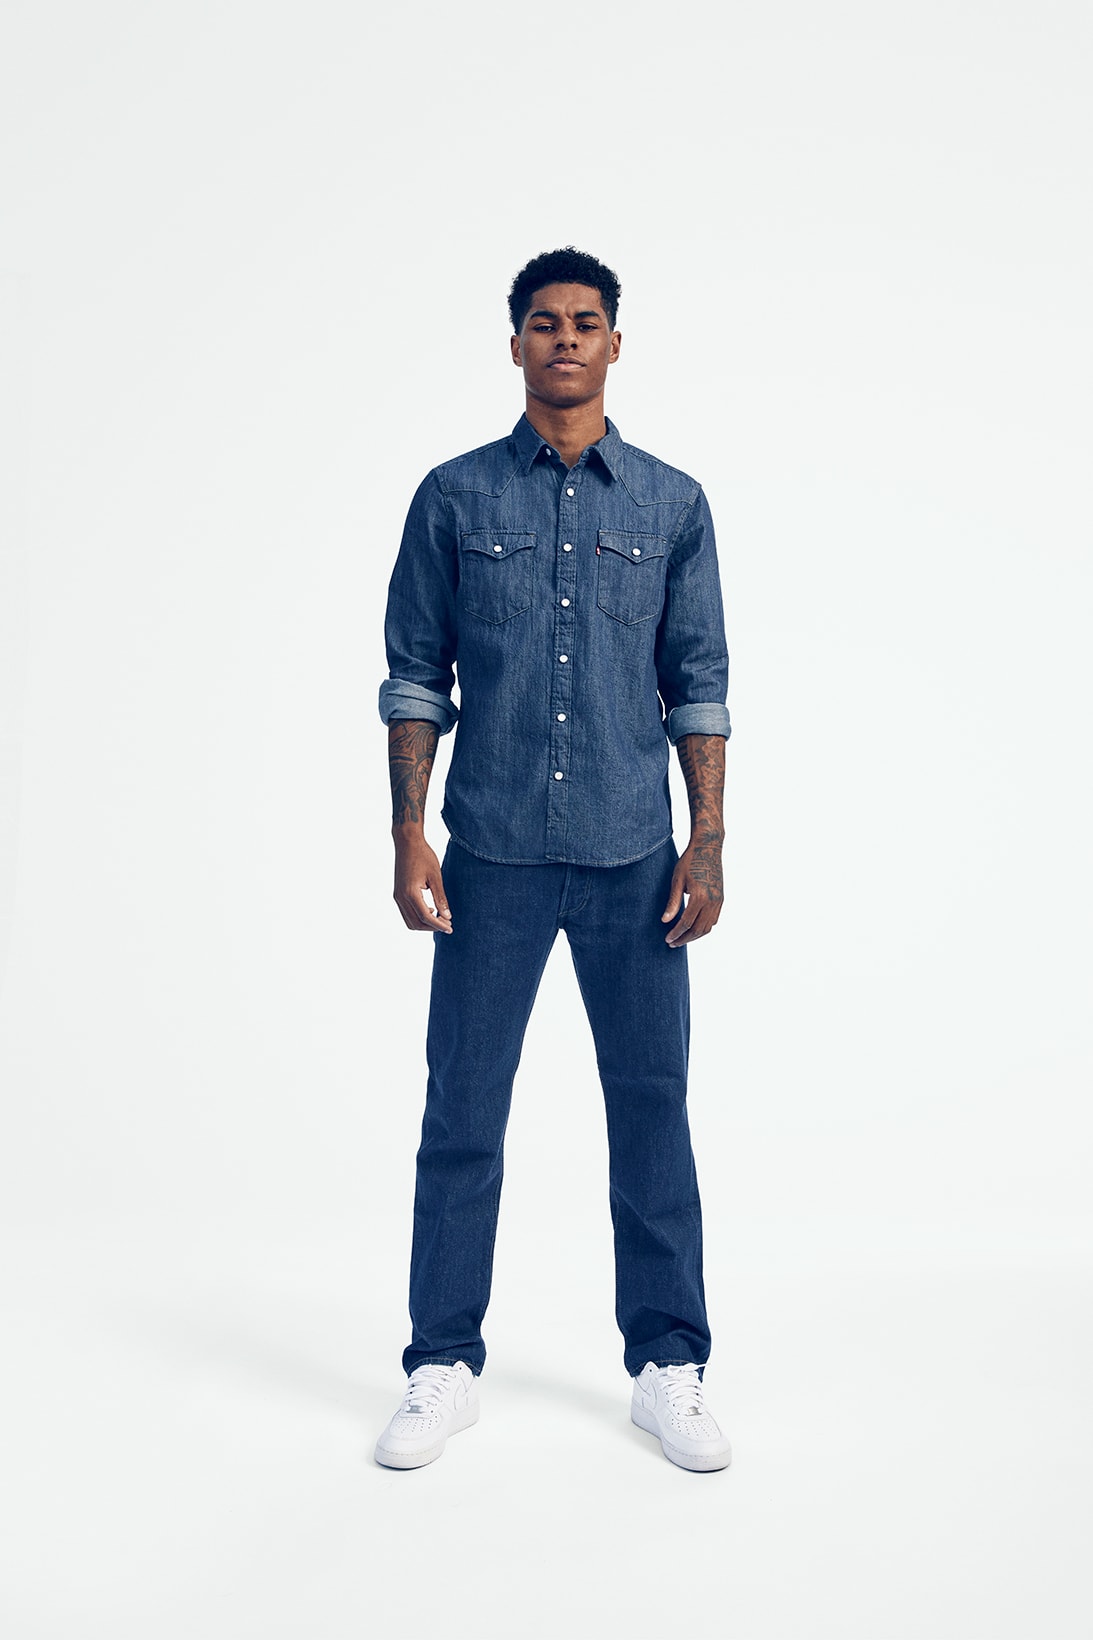 Levi's 501 Originals Jeans Campaign